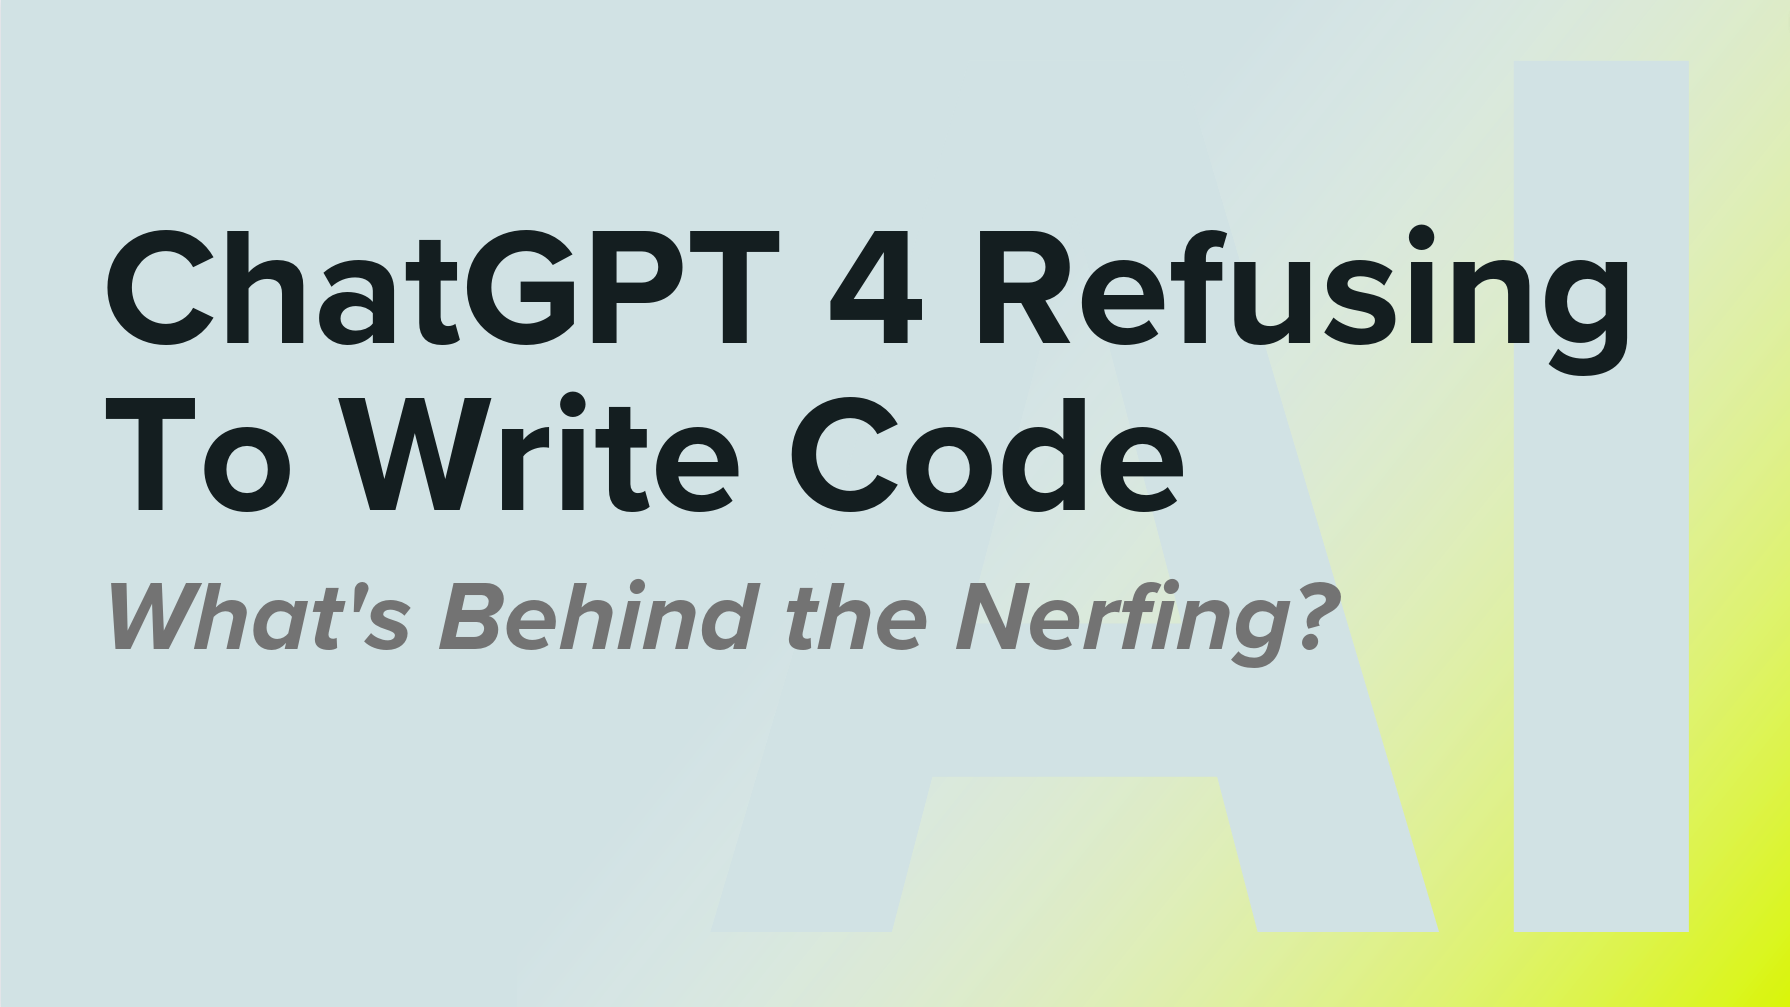 ChatGPT 4 Refusing to Write Code